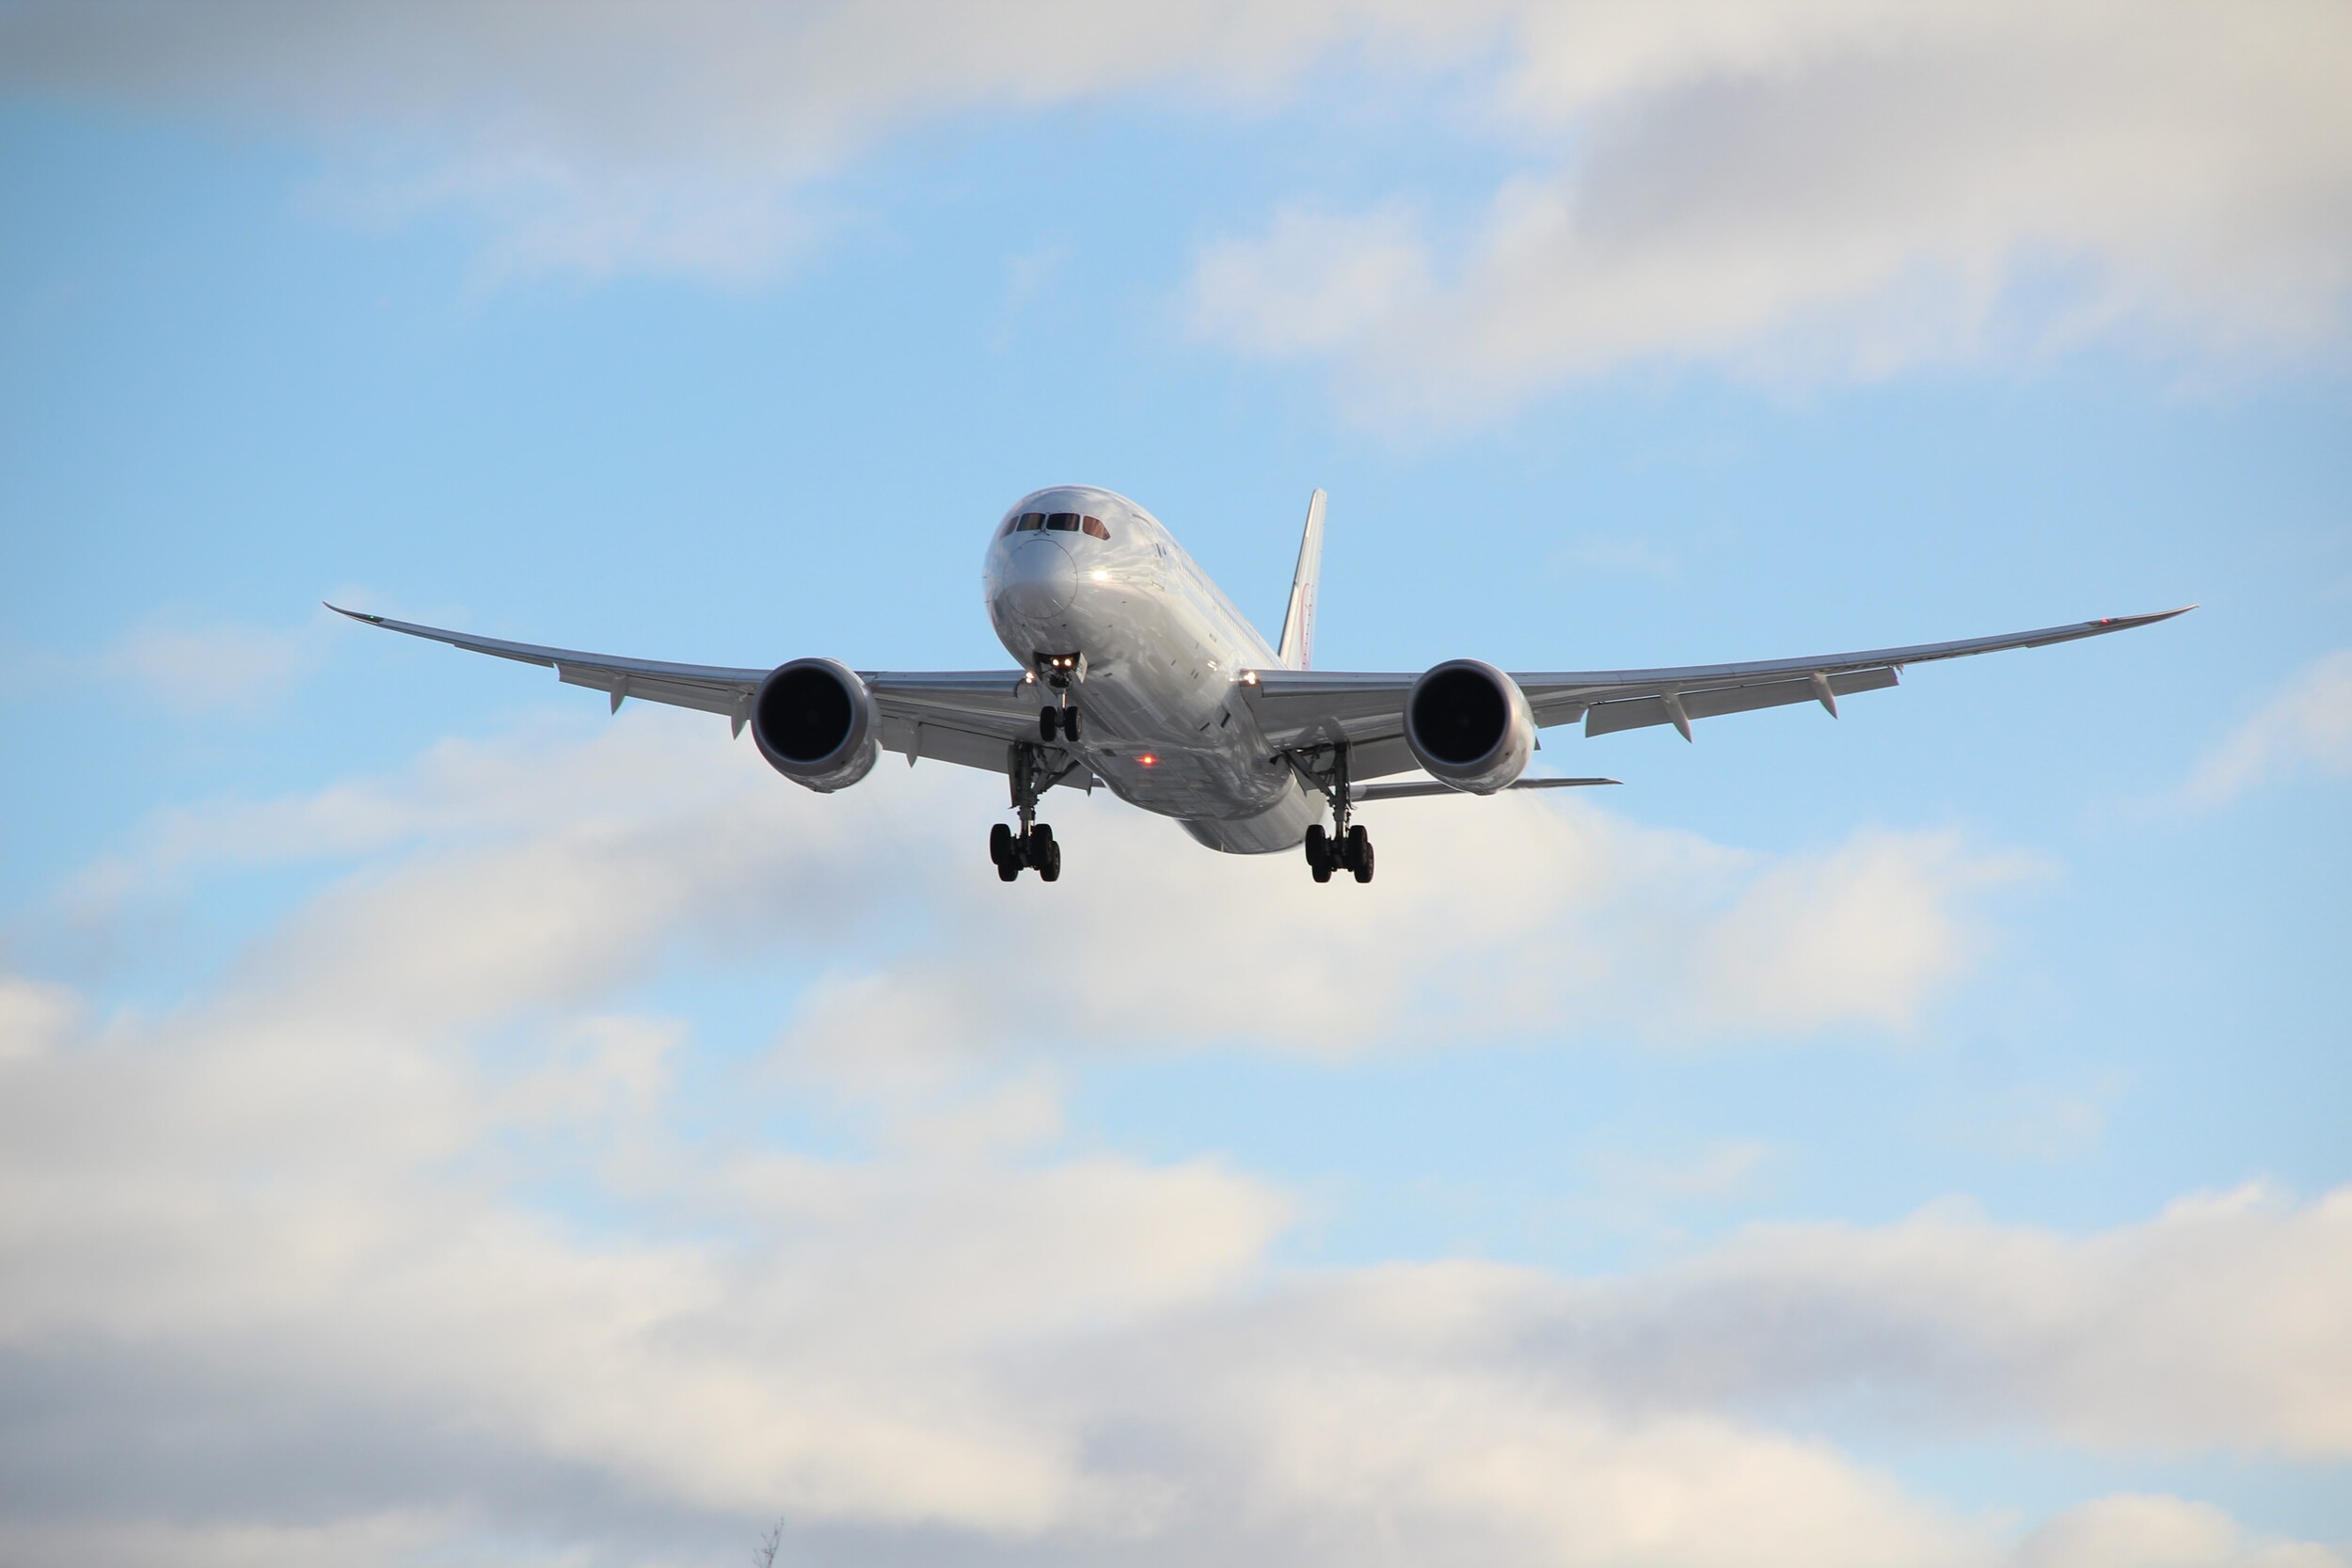 Πτήση του τρόμου στο Μαϊάμι για αεροπλάνο με 137 επιβαίνοντες – «Νόμιζα ότι θα πέθαινα» (βίντεο)